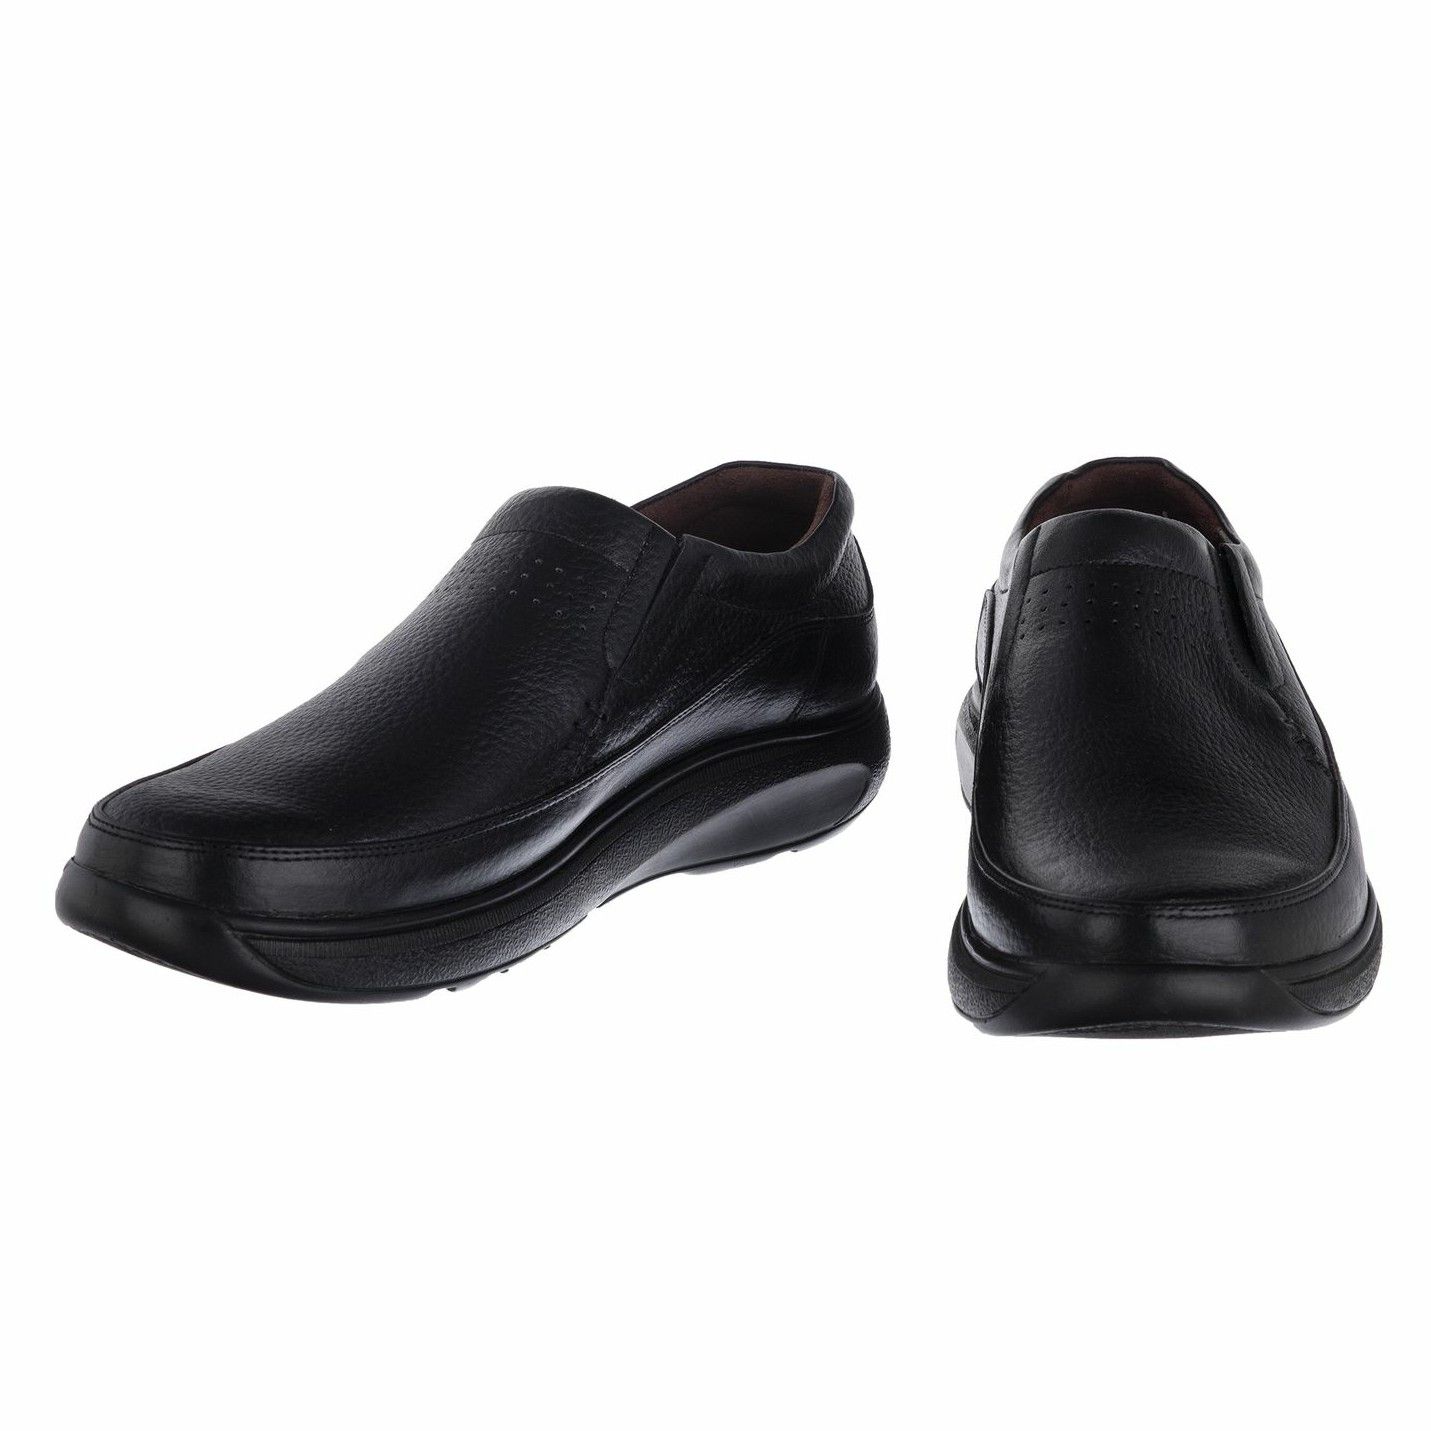 کفش روزمره مردانه دلفارد مدل چرم طبیعی کد D503101 -  - 5